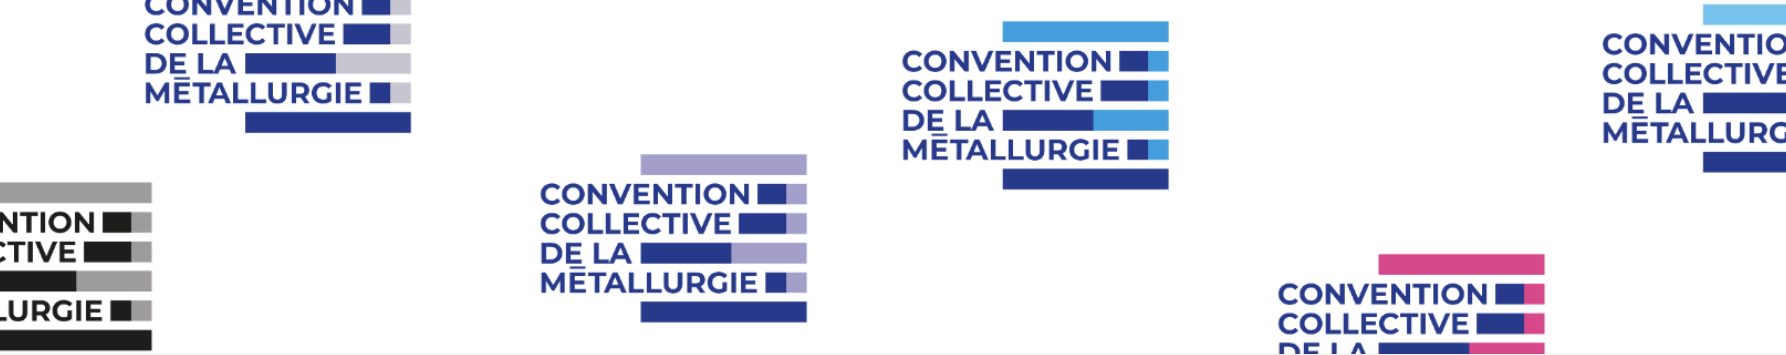 Convention collective de la métallurgie